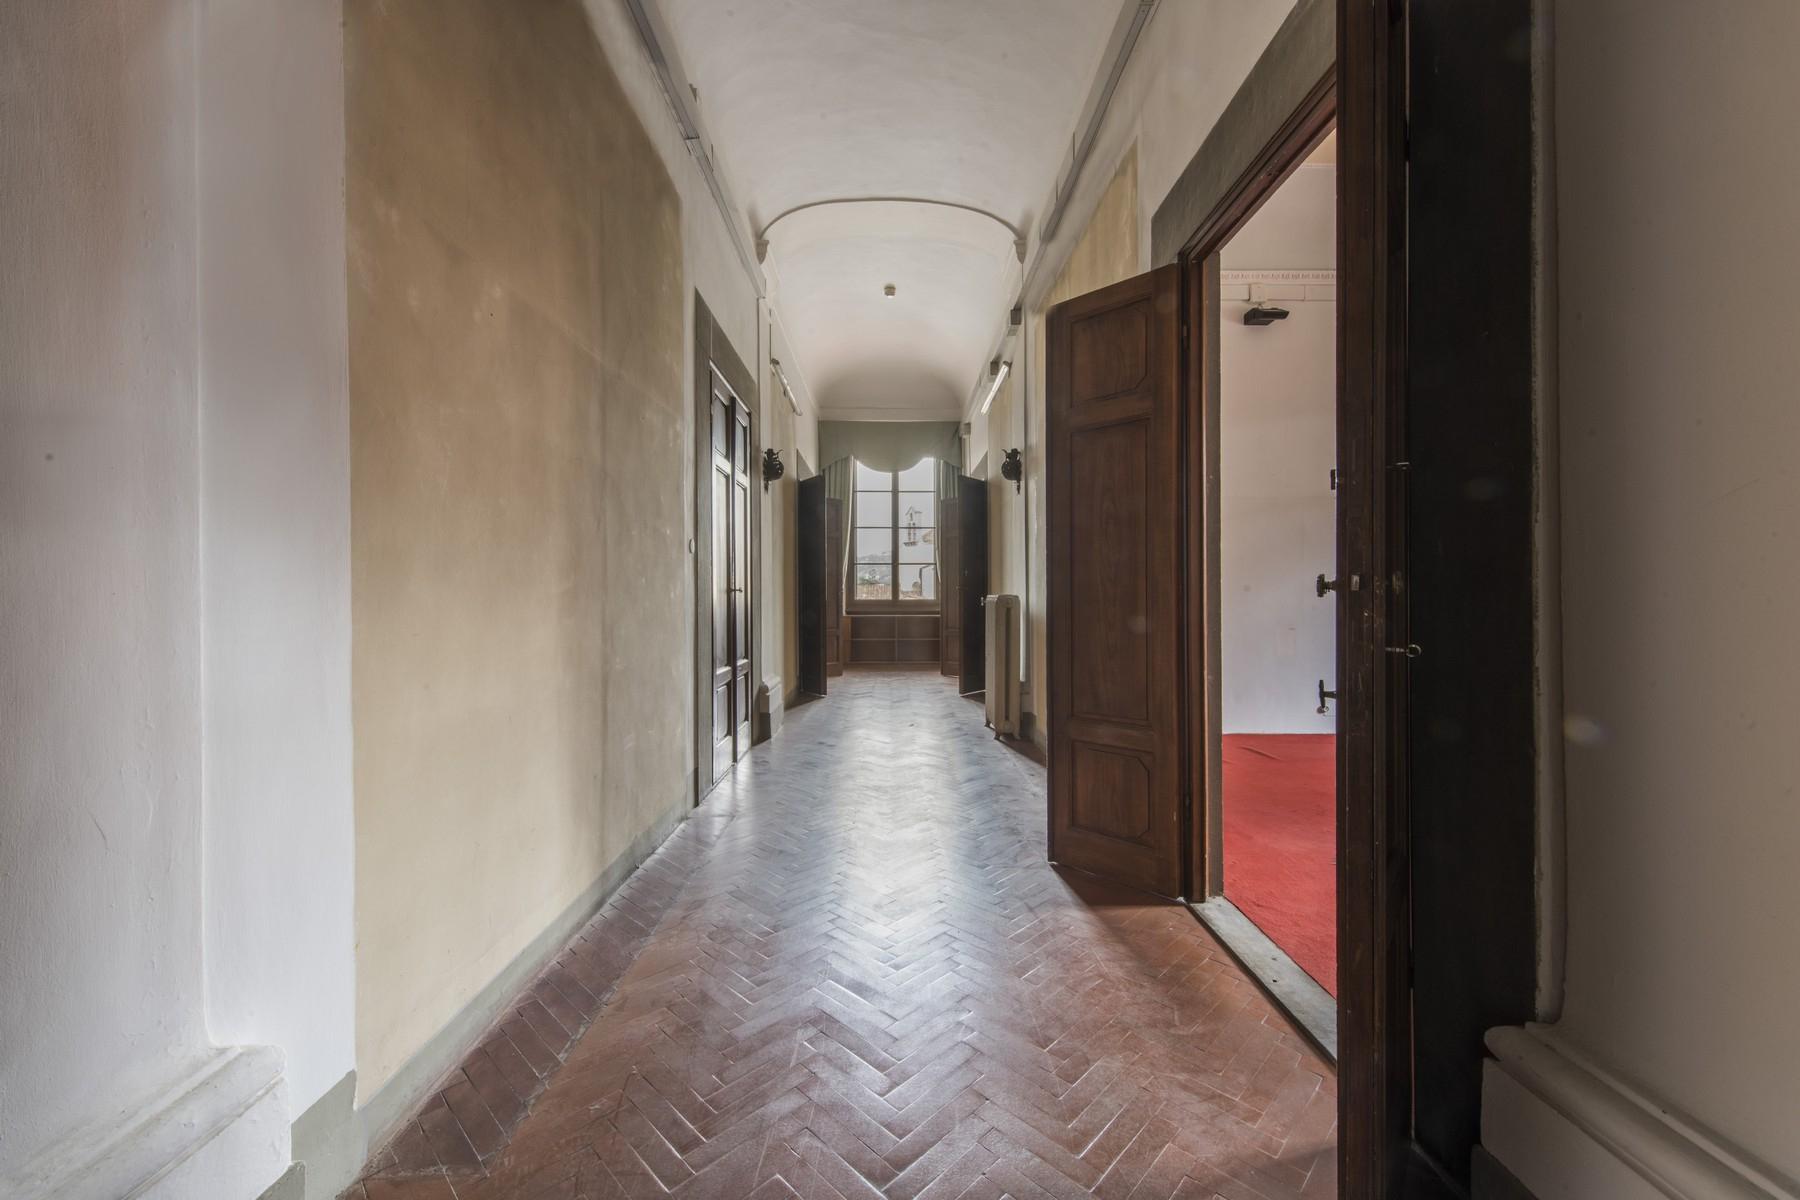 Великолепный пентхаус площадью 520 кв.м в историческом флорентийском палаццо - 18